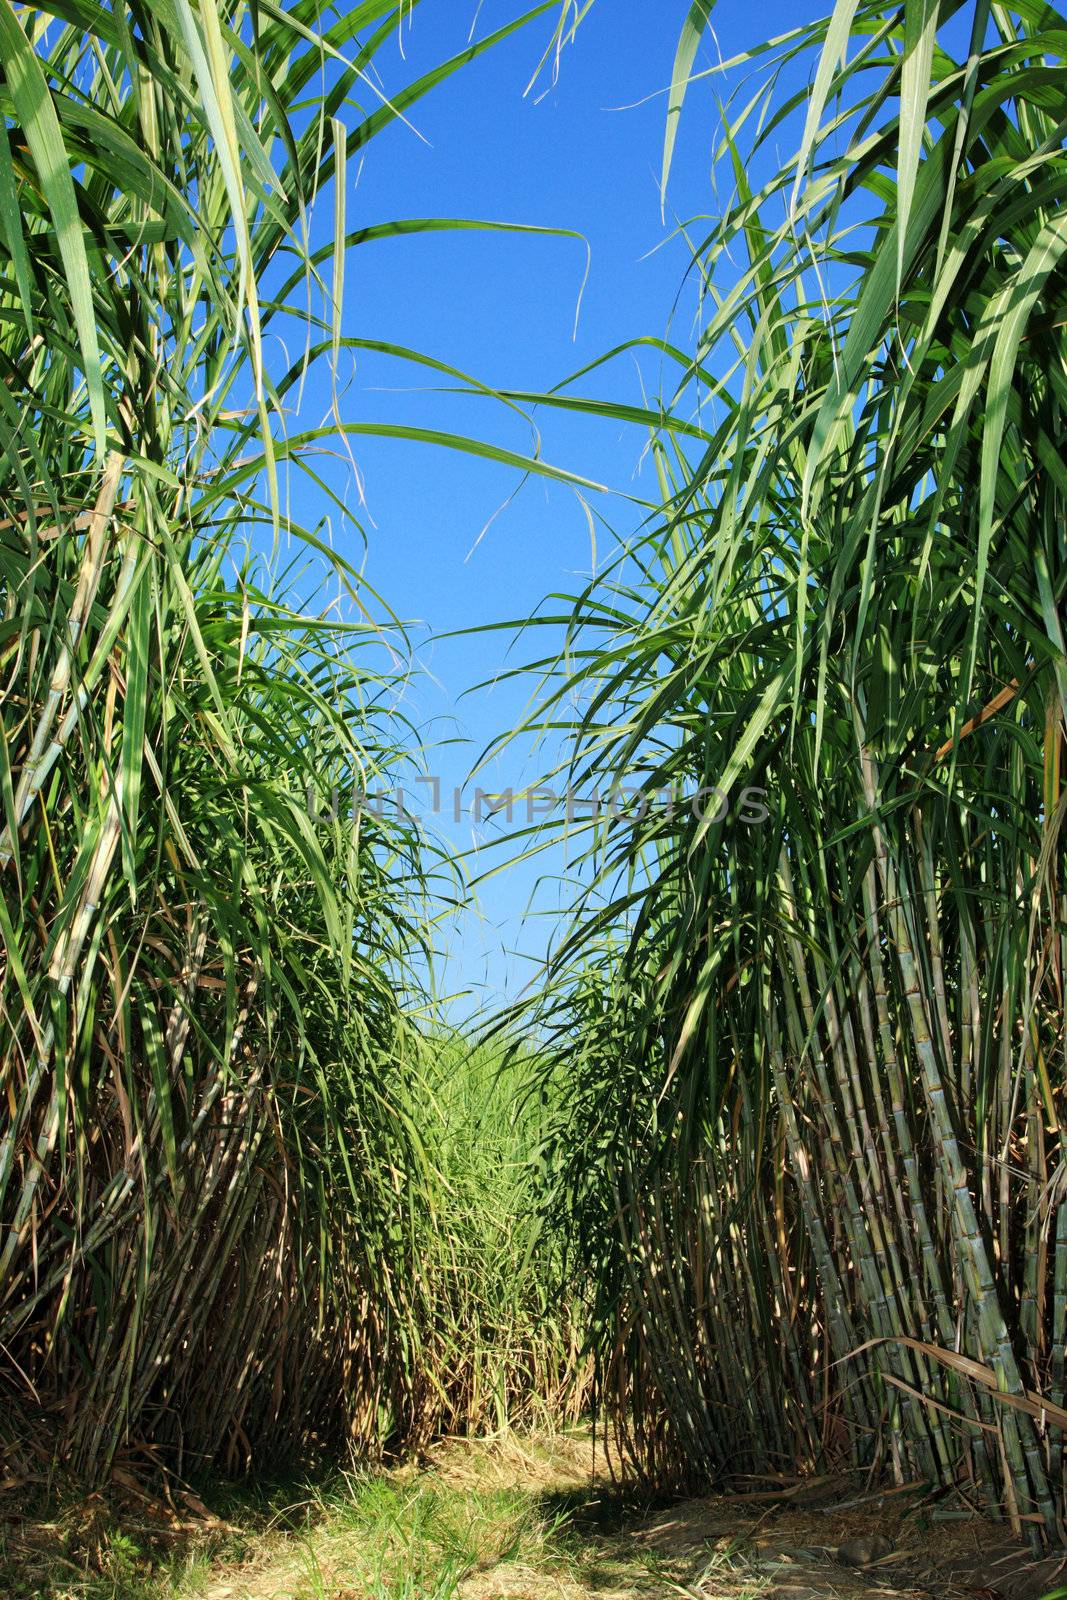 Field of sugar cane